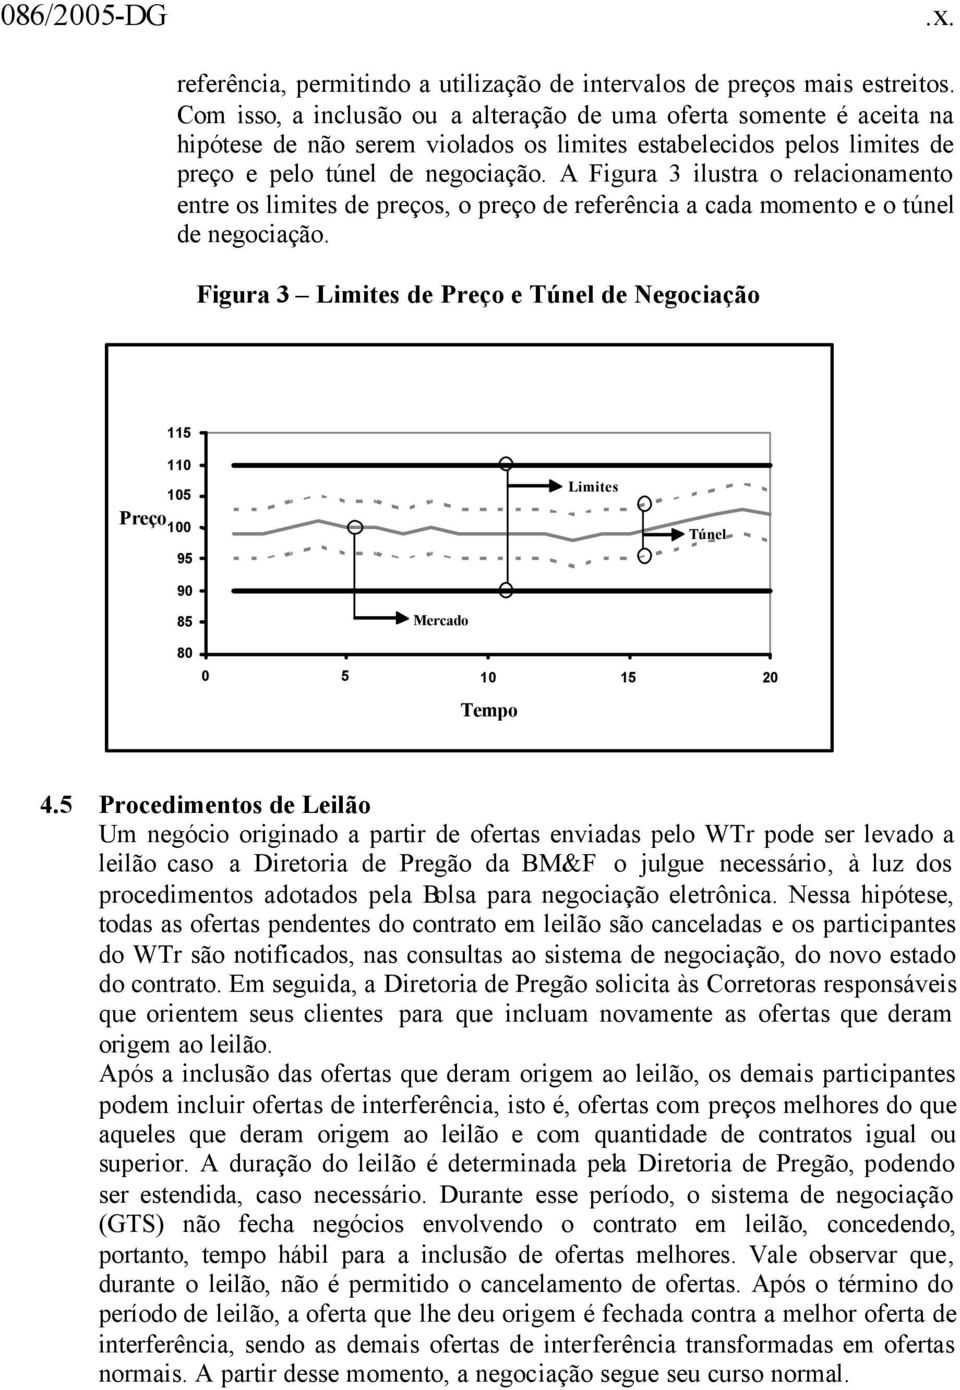 A Figura 3 ilustra o relacionamento entre os limites de preços, o preço de referência a cada momento e o túnel de negociação.